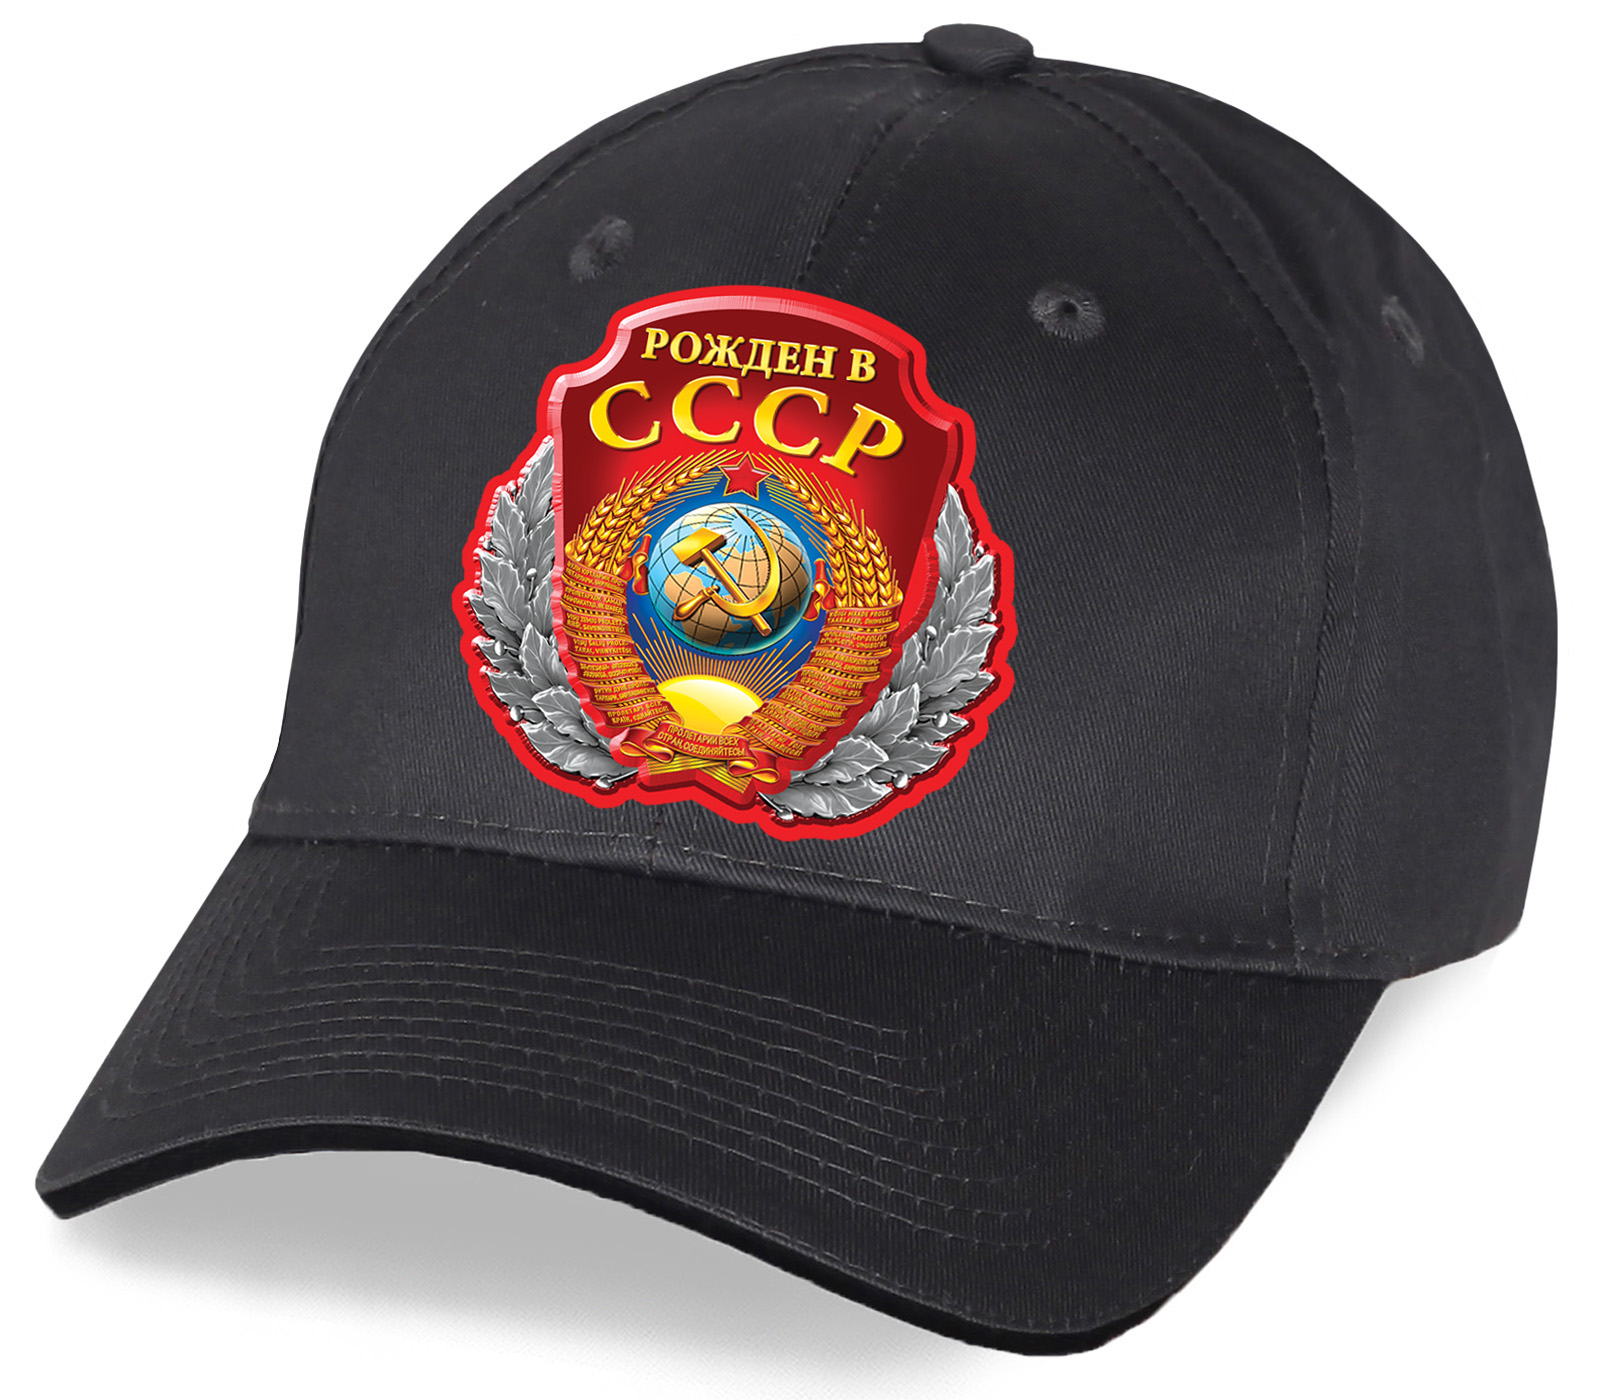 Сувенирная хлопковая бейсболка «Рожден в СССР» - заставит Вас вспомнить детство  юность. Стильный ретро тренд для Вашего гардероба от Военпро по выгодной цене